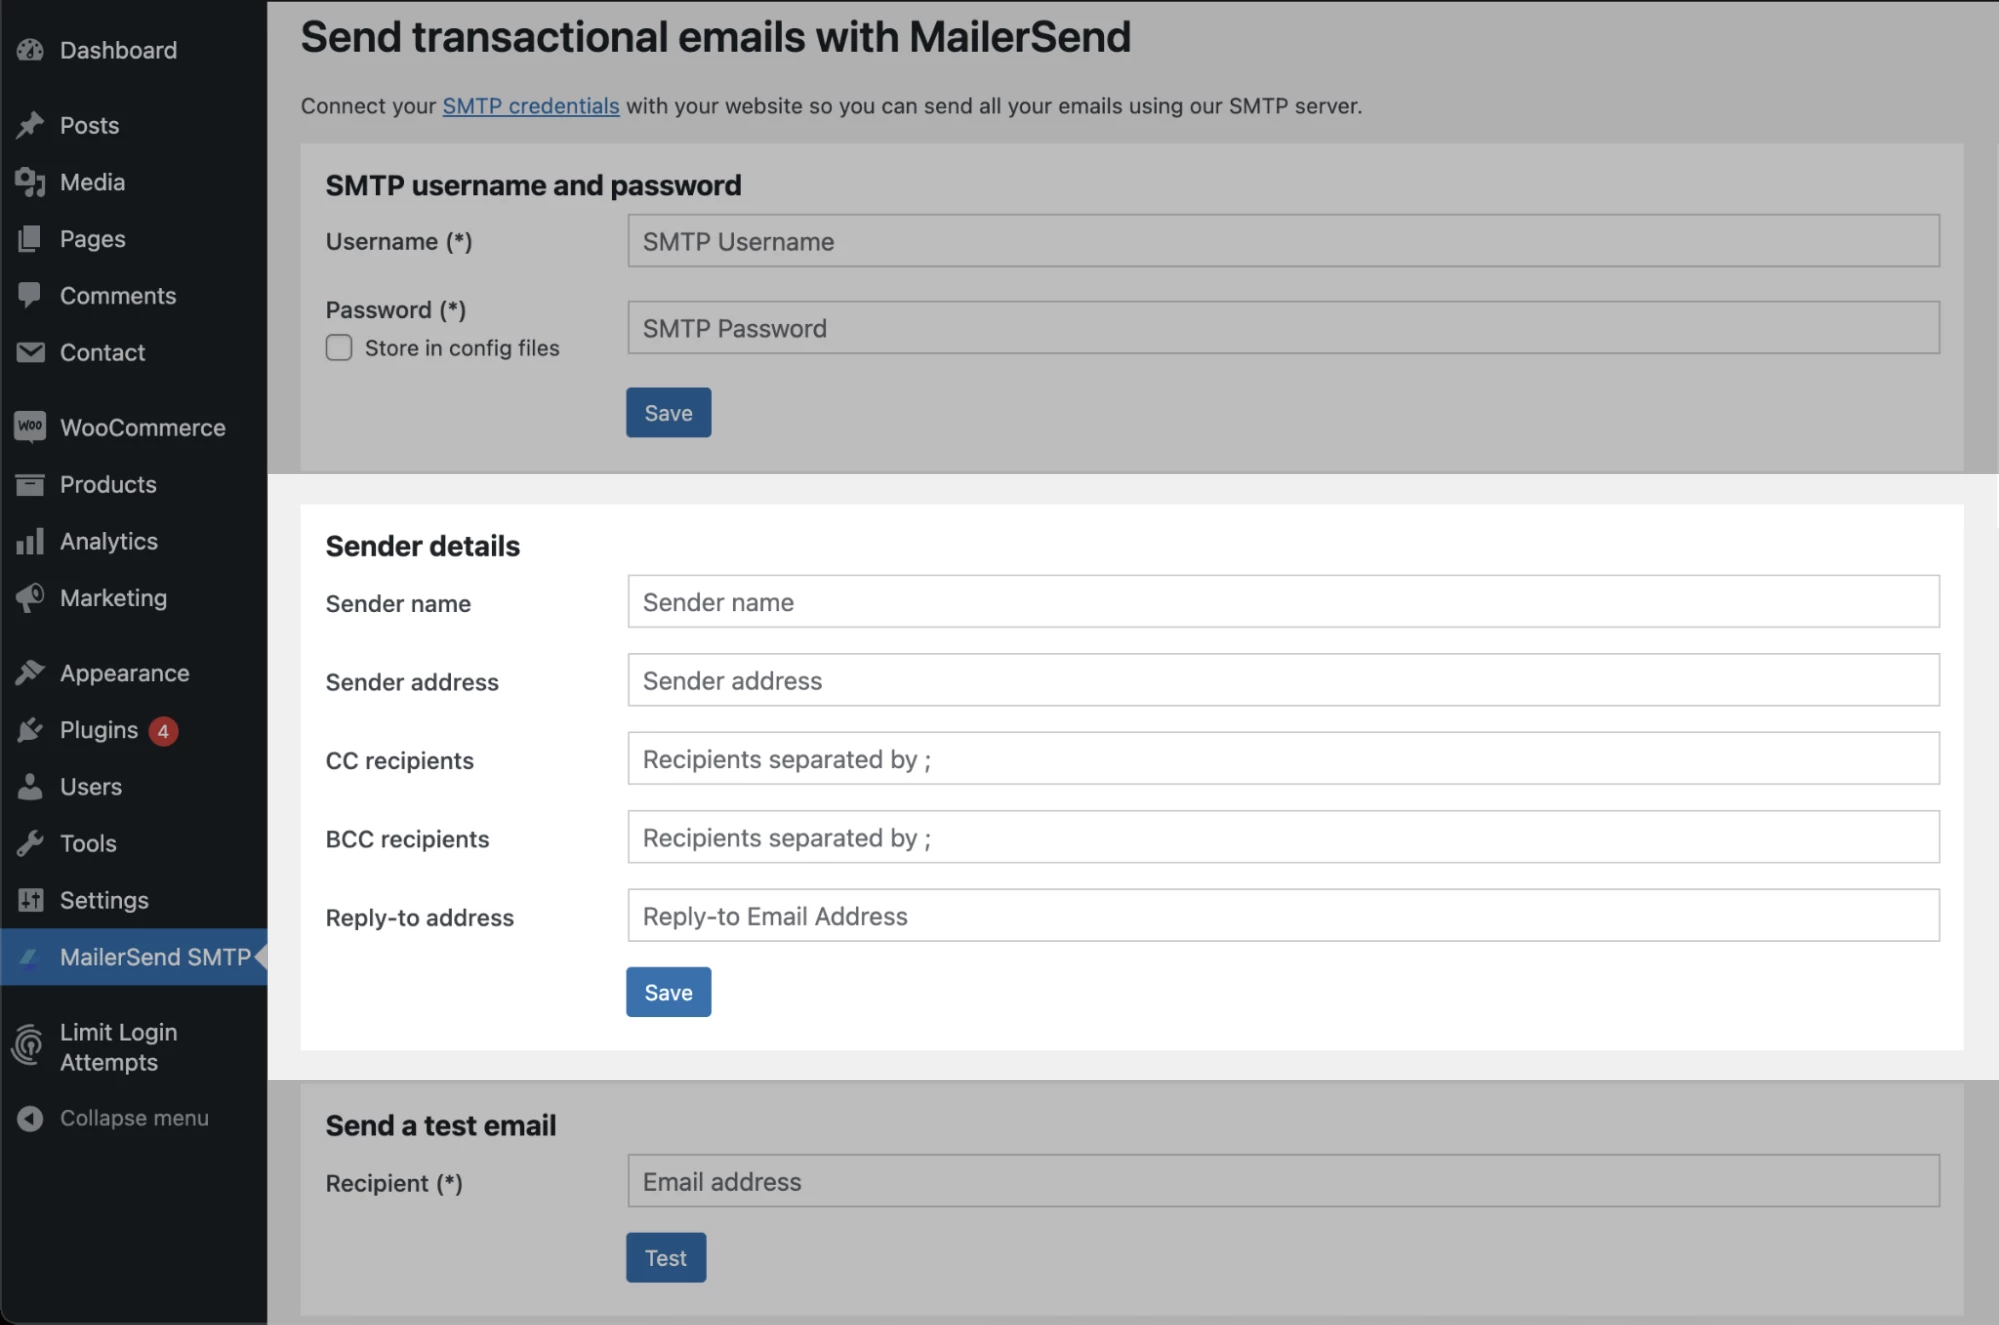 SMTP sender details